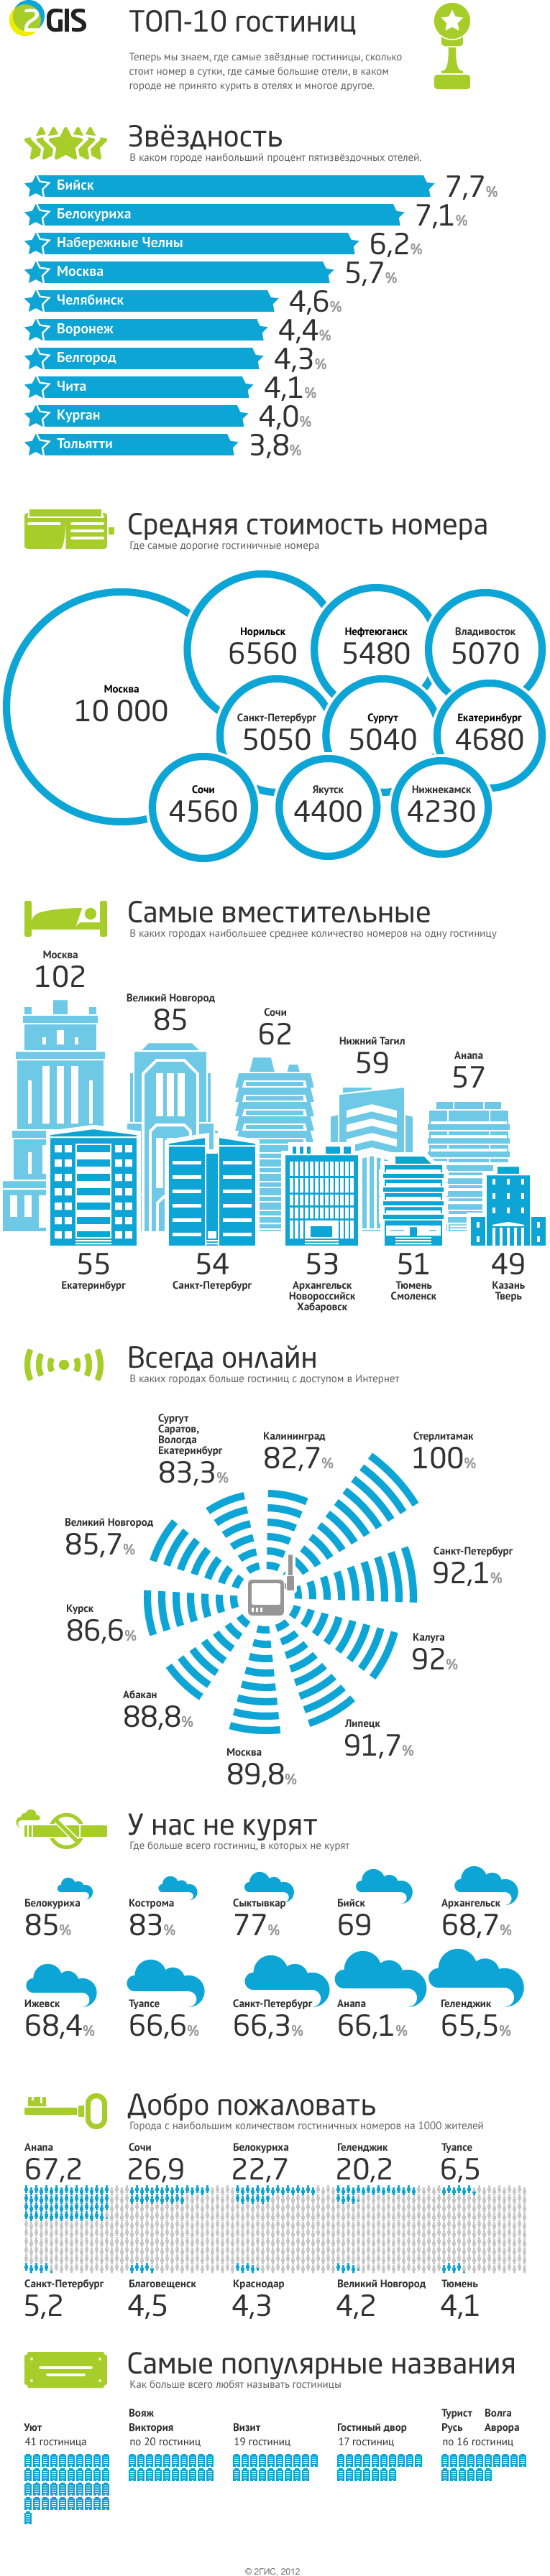 Интересные факты о гостиницах в России 